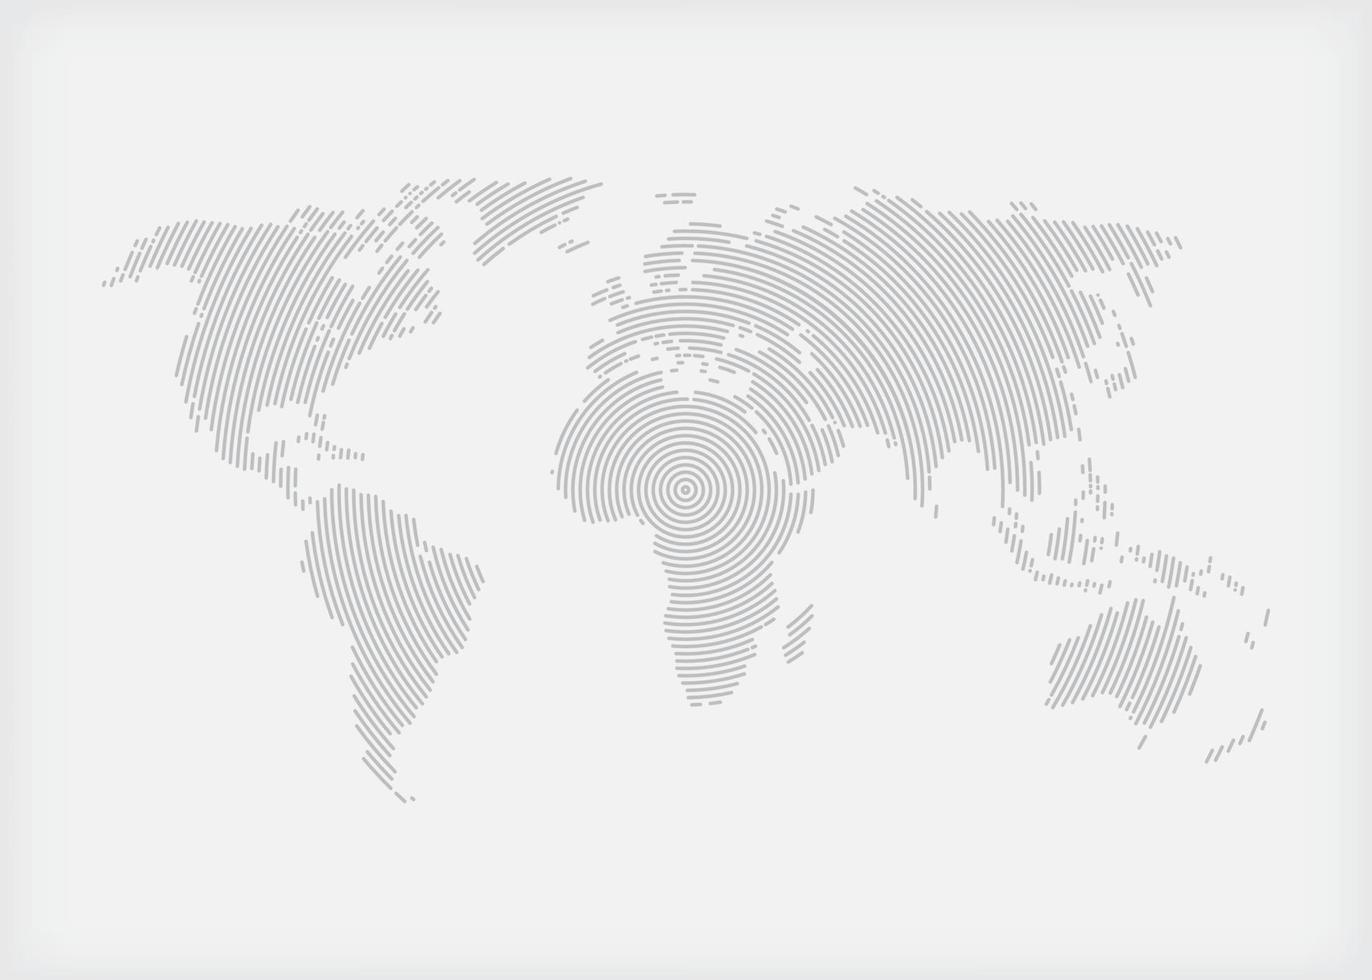 illustration de la carte du monde vecteur